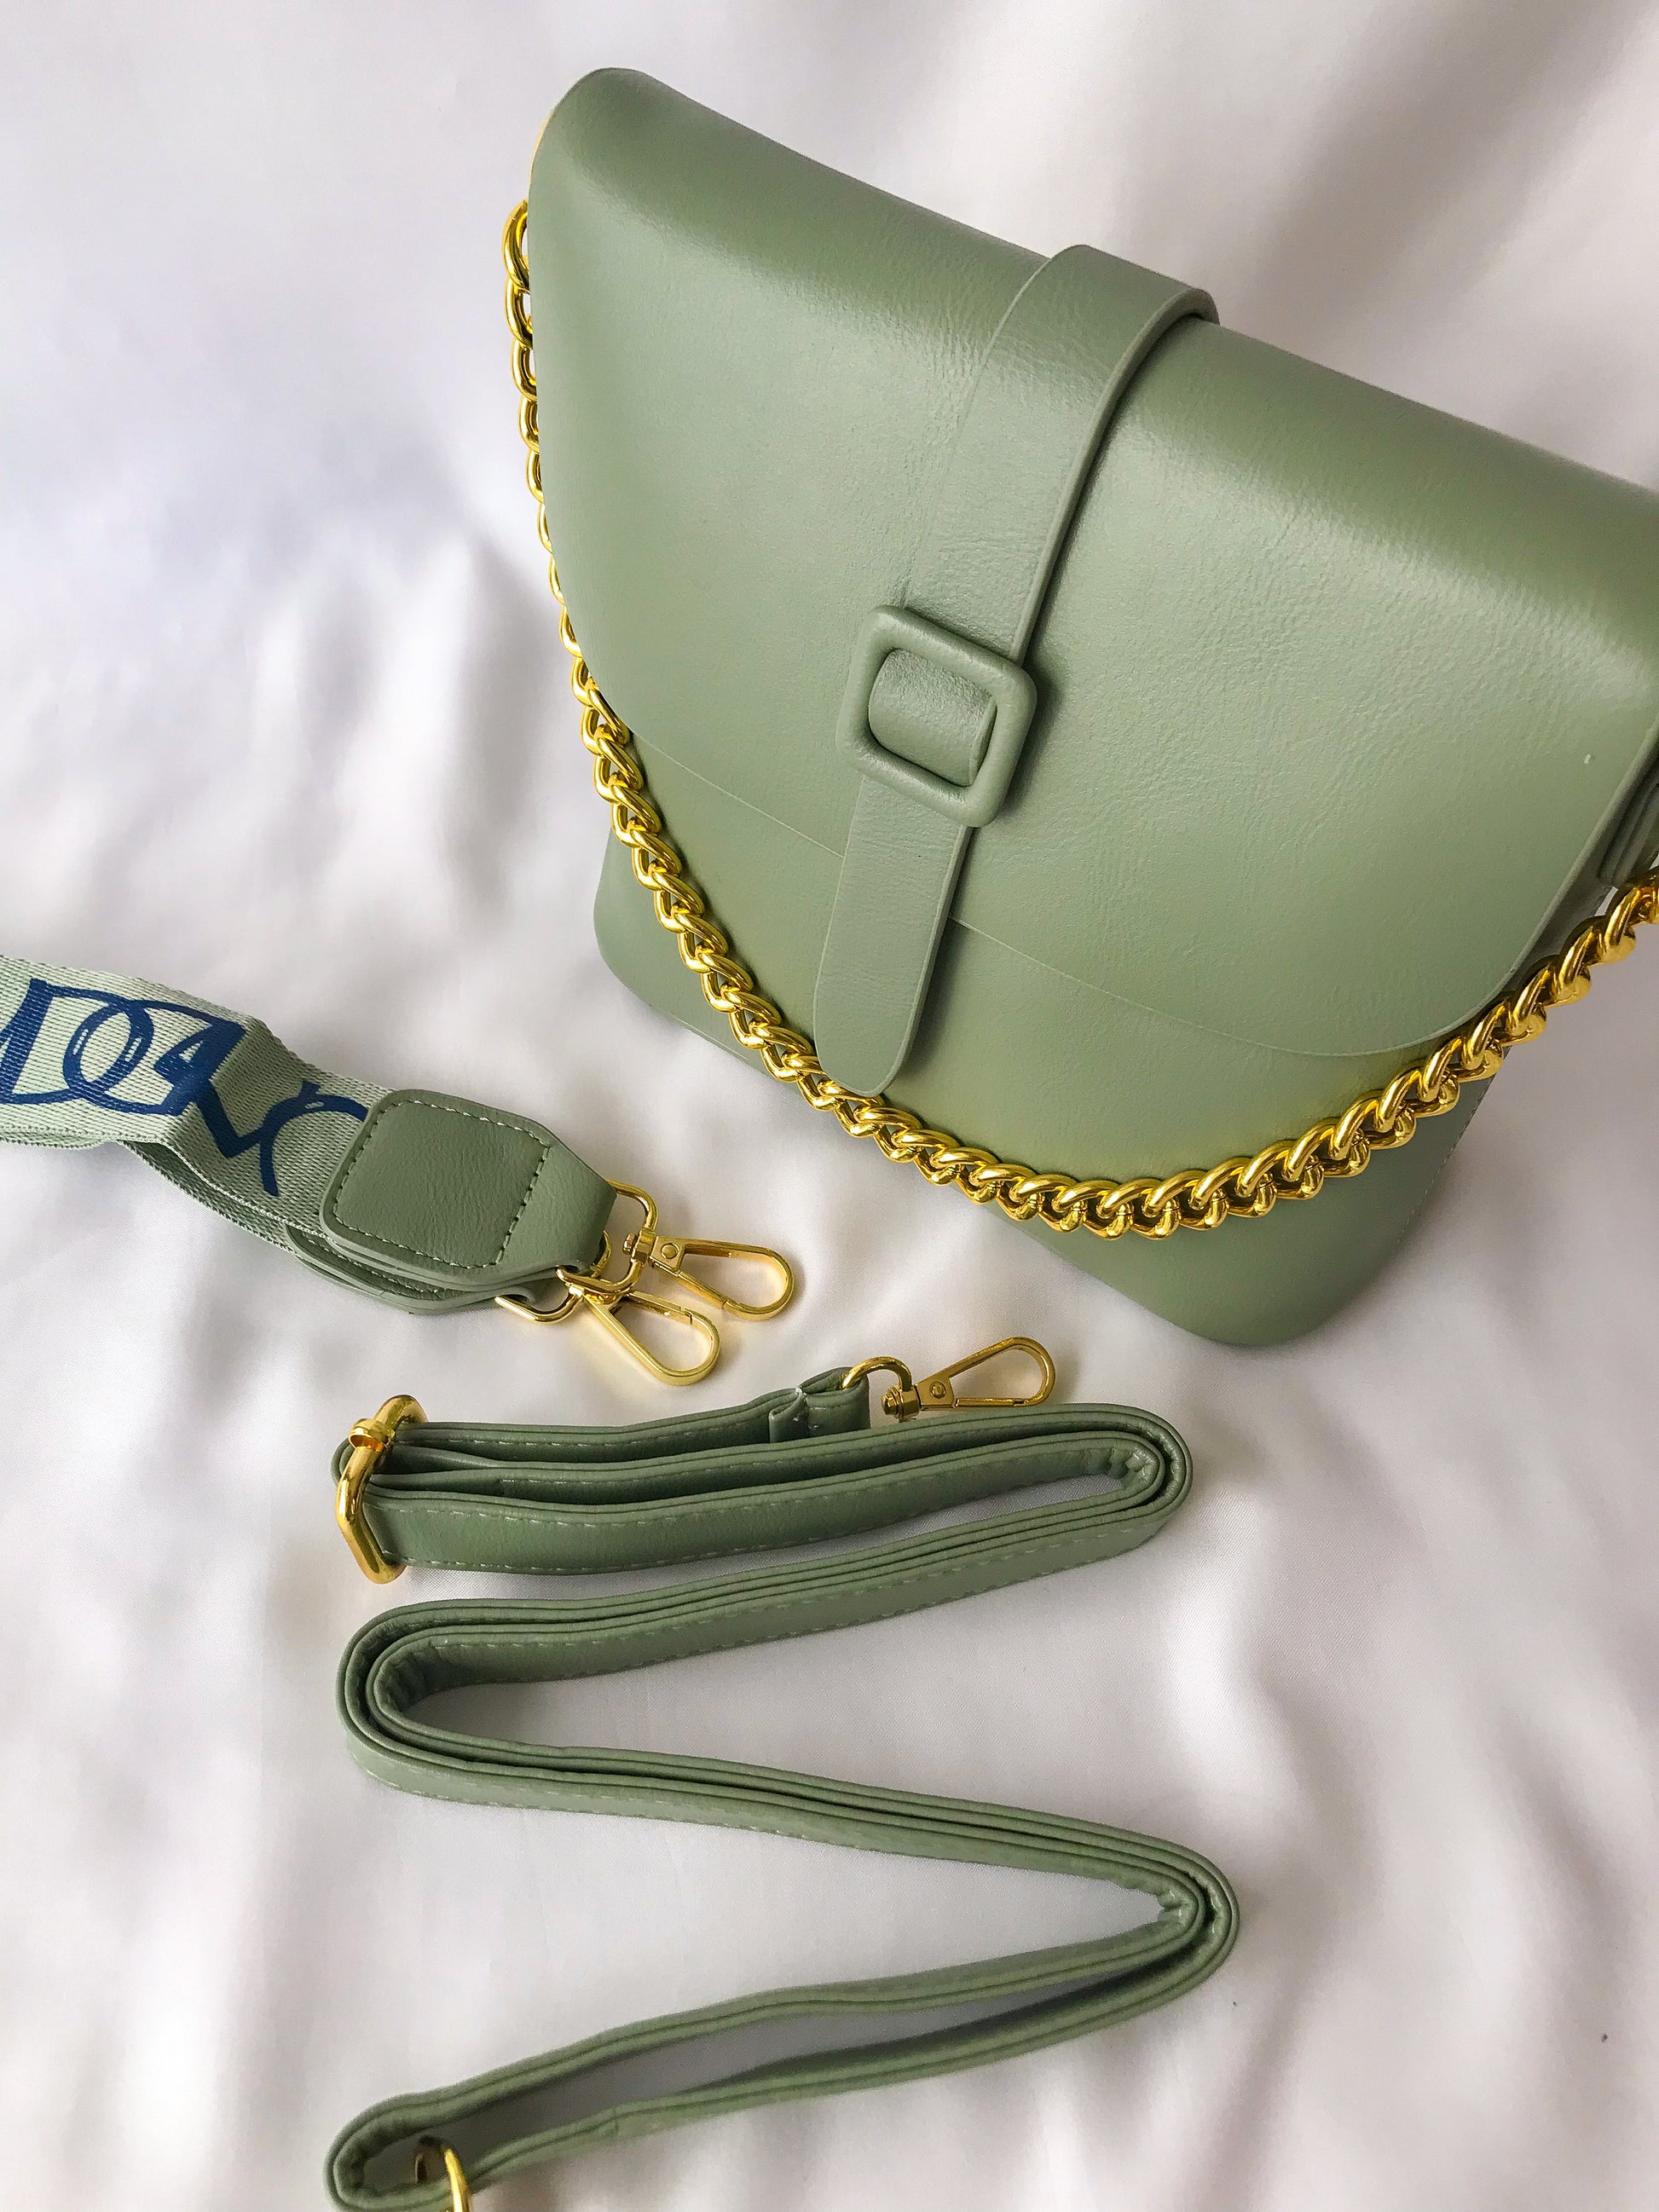 cartera tipo crossbody verde con cadena decorativa y strap